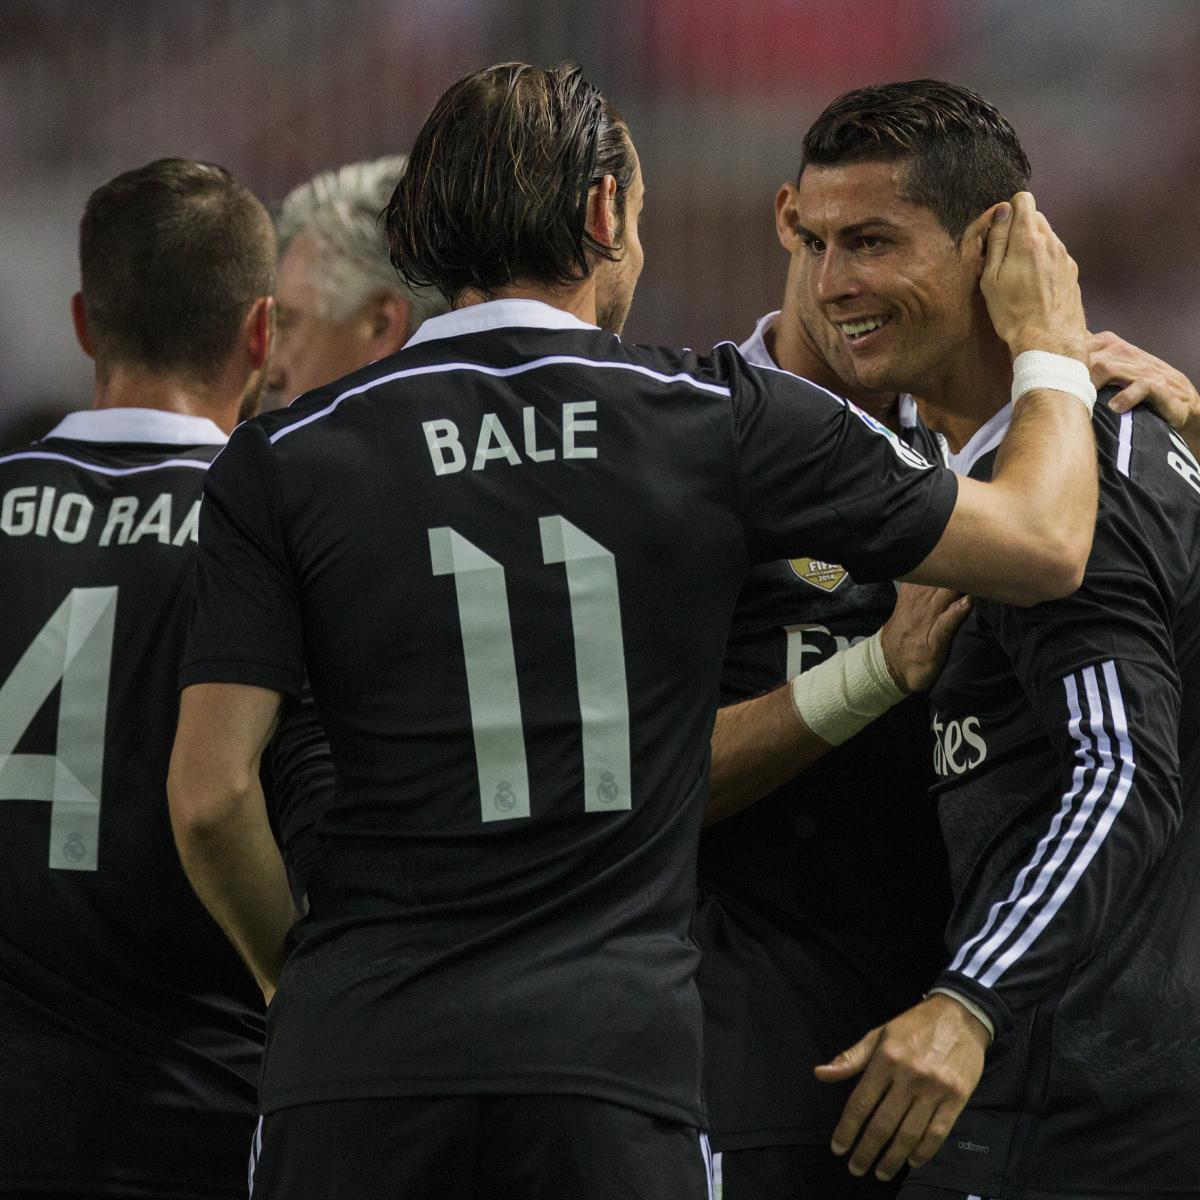 Real Madrid vs Barcelona: Cristiano Ronaldo to wear sparkly new